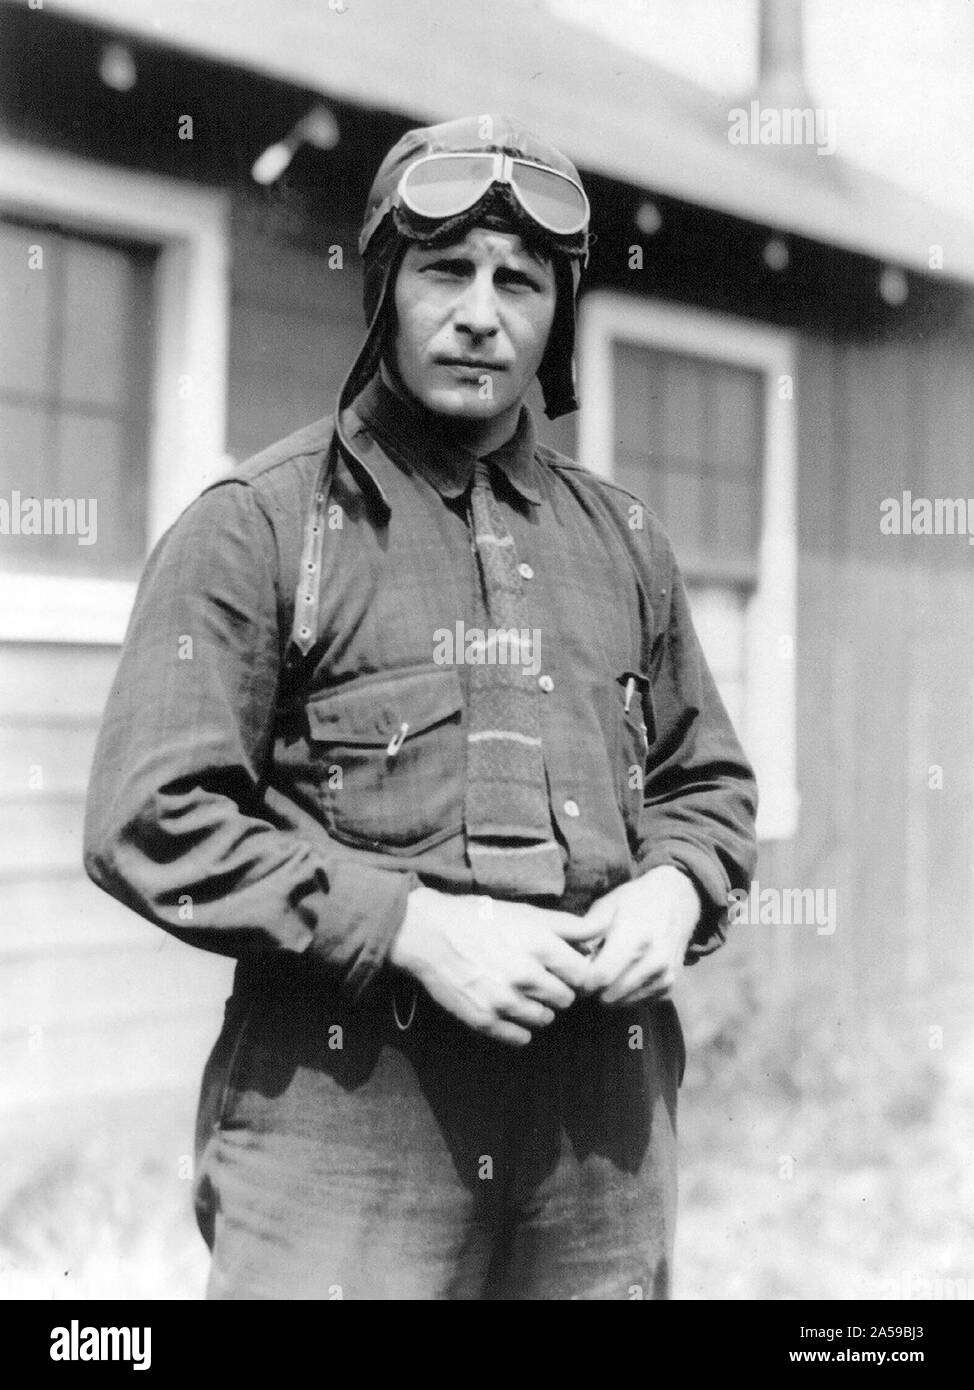 Bernt Balchen 11 29 1929 - Byrd's Pilot am Südpol Flug, Nov. 29, 1929; 12 Länge, in der Kleidung Aviator's, Stockfoto